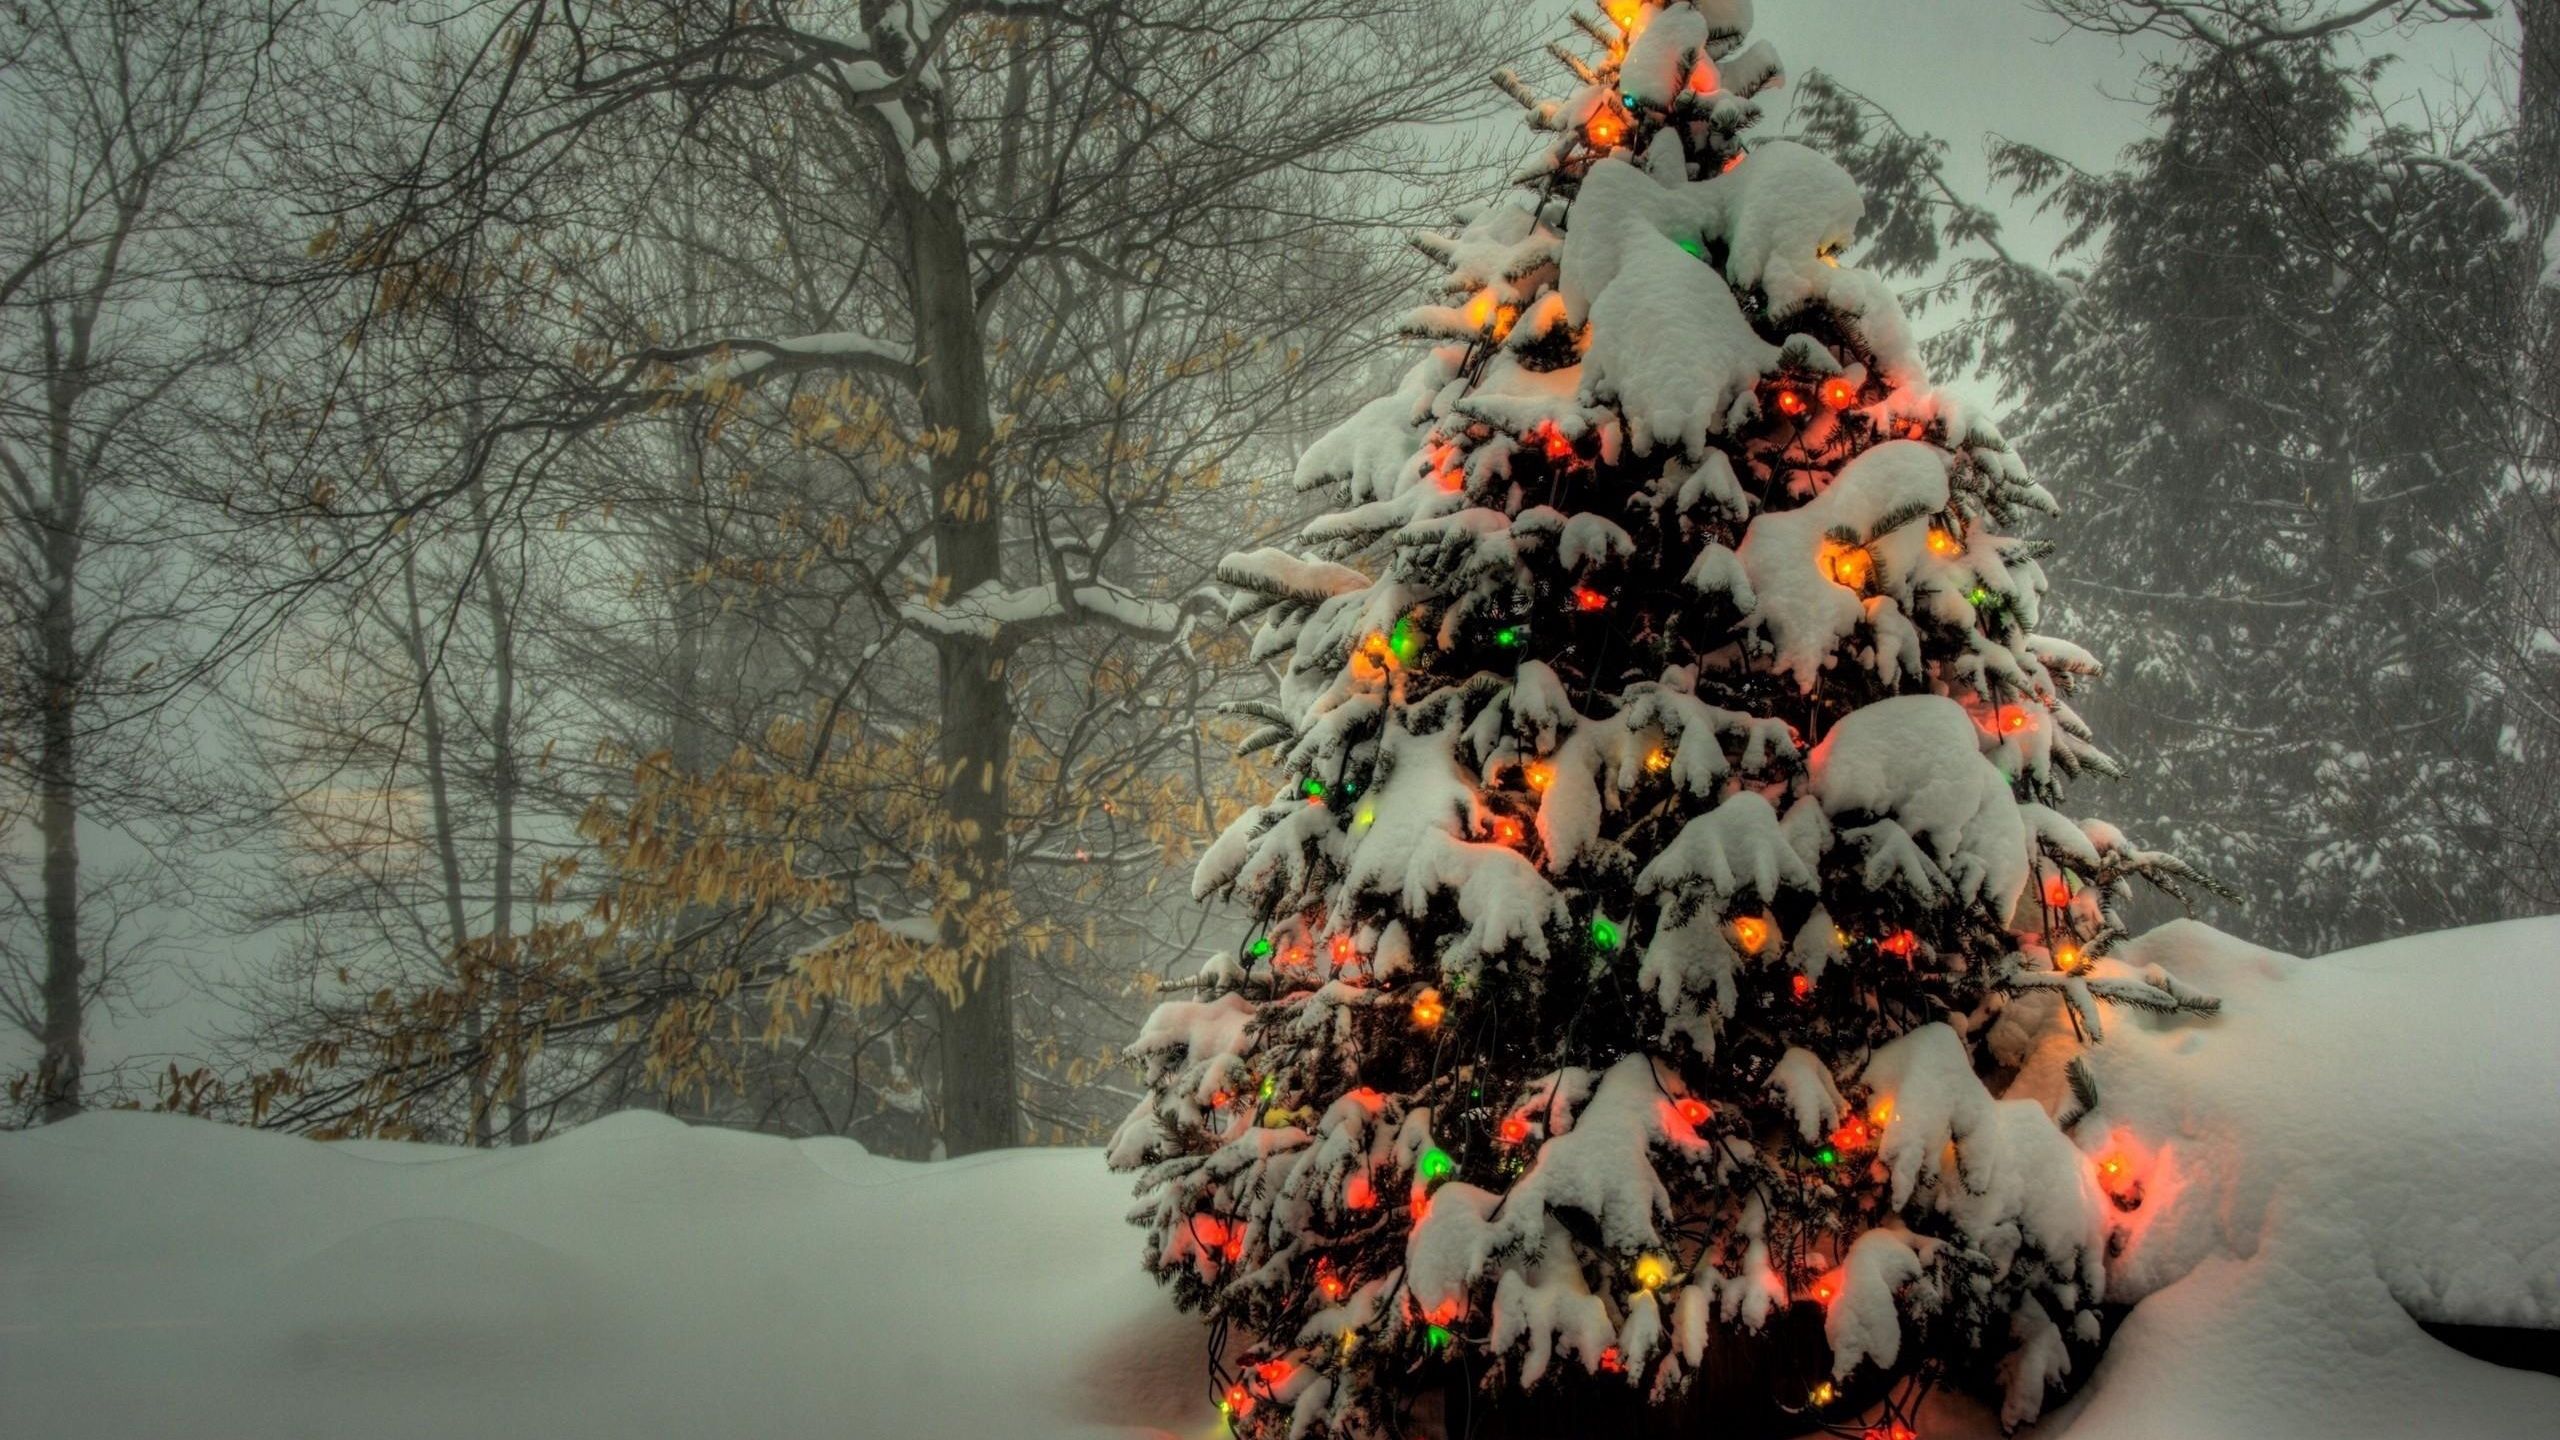 Không gian đón Giáng sinh chỉ cần một chút năng động và phong cách, vậy tại sao bạn không lựa chọn hình nền hoàn hảo nhất cho màn hình của mình. Hình nền dây đèn trang trí cùng cây thông Giáng sinh sẽ mang lại không gian ấm áp và lung linh, rực rỡ hơn bao giờ hết.